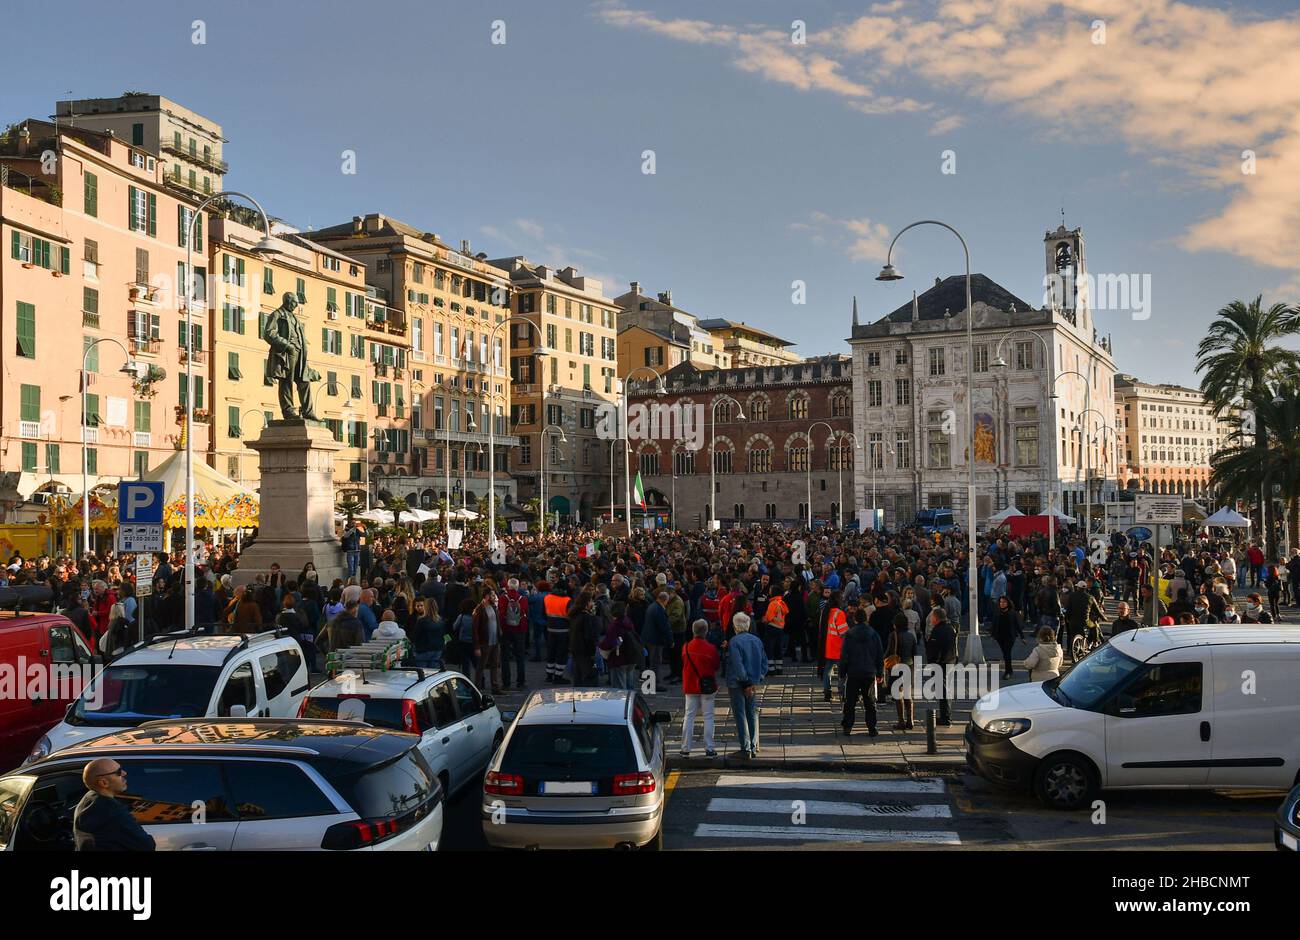 Genova, Liguria, Italia - 10 23 2021: Folla di persone in un rally di protesta No Green Pass in Piazza Caricamento, con Palazzo San Giorgio sullo sfondo Foto Stock